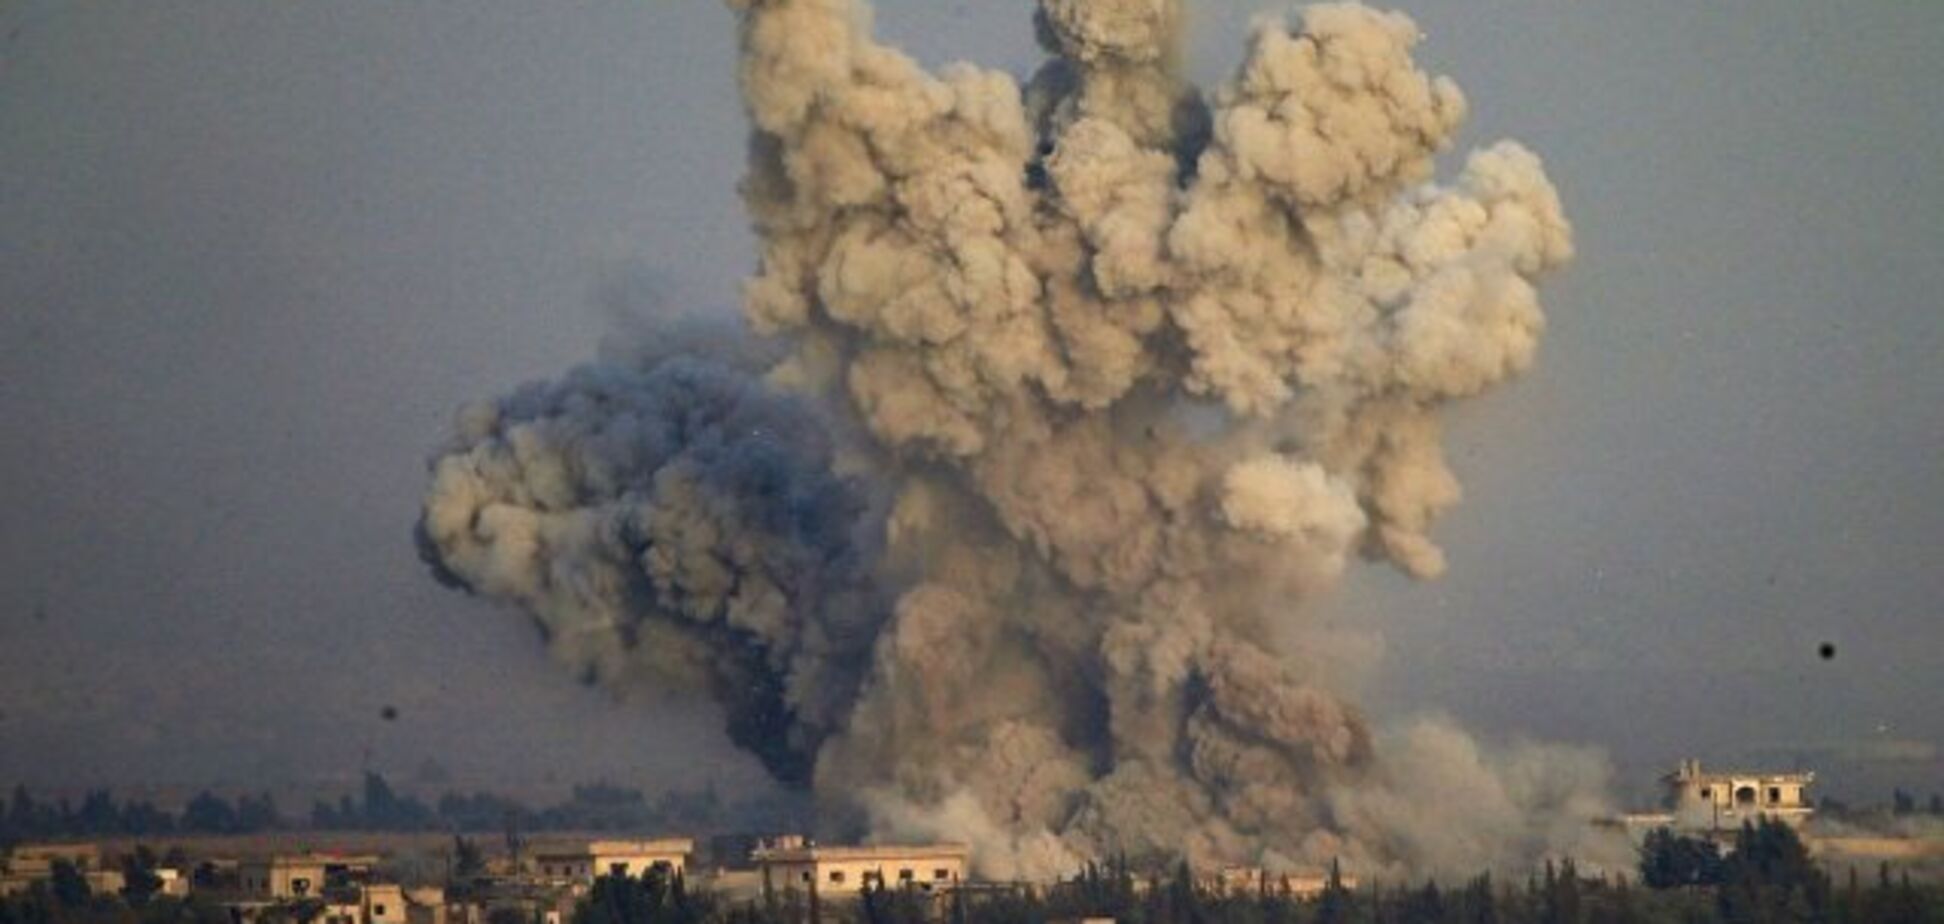 'Виноват распятый мальчик': в сети высмеяли крушение Ил-20 над Сирией